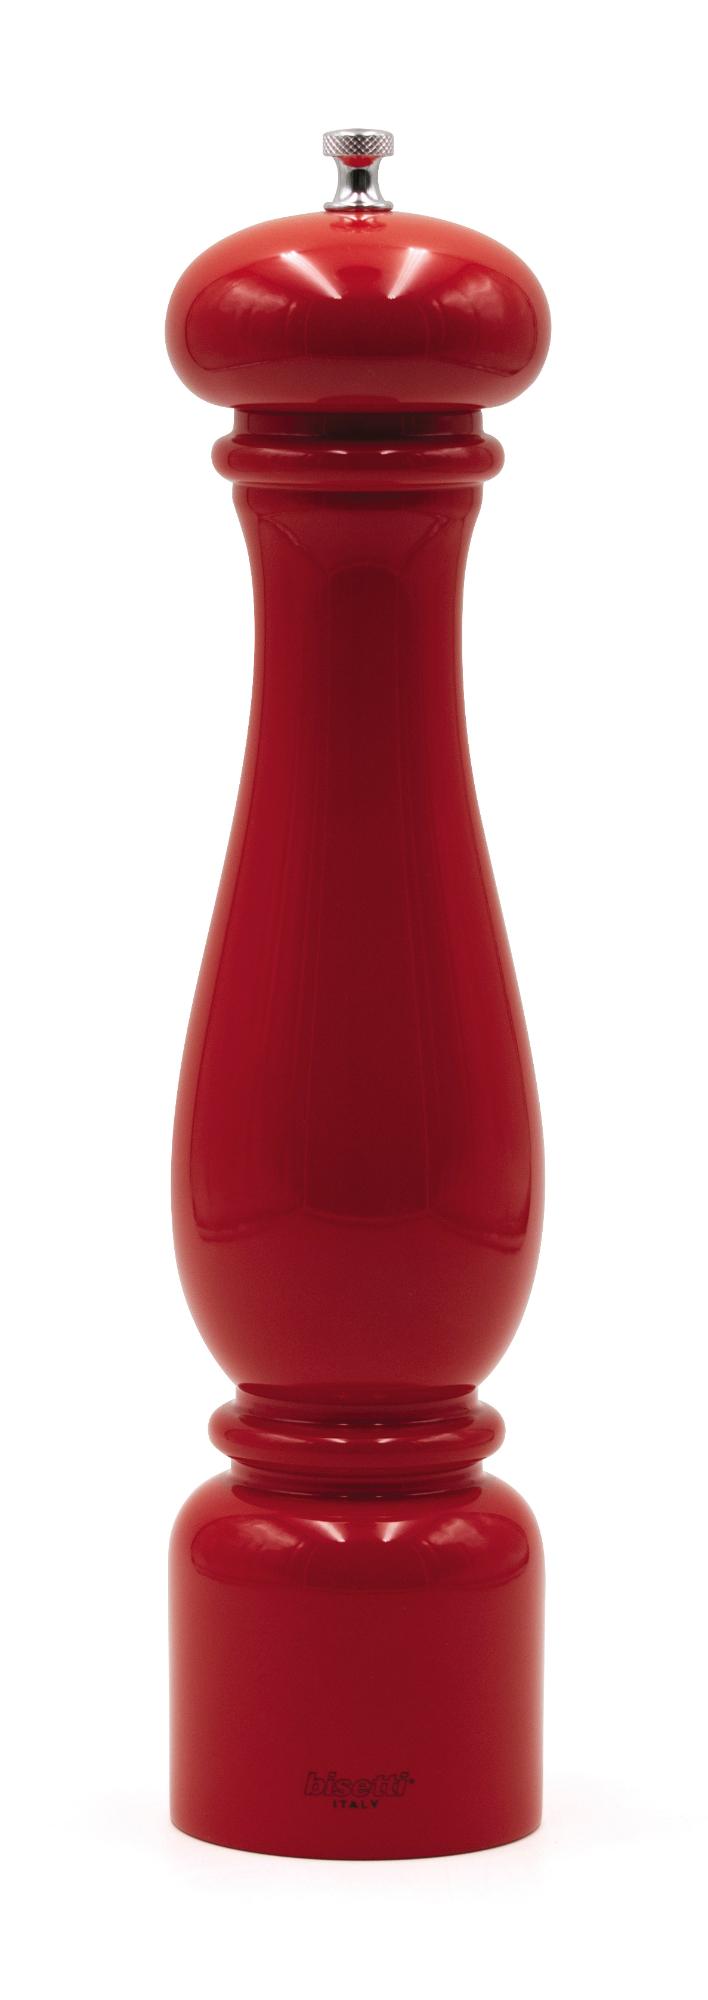 Firenze pepper mill, red, 420mm